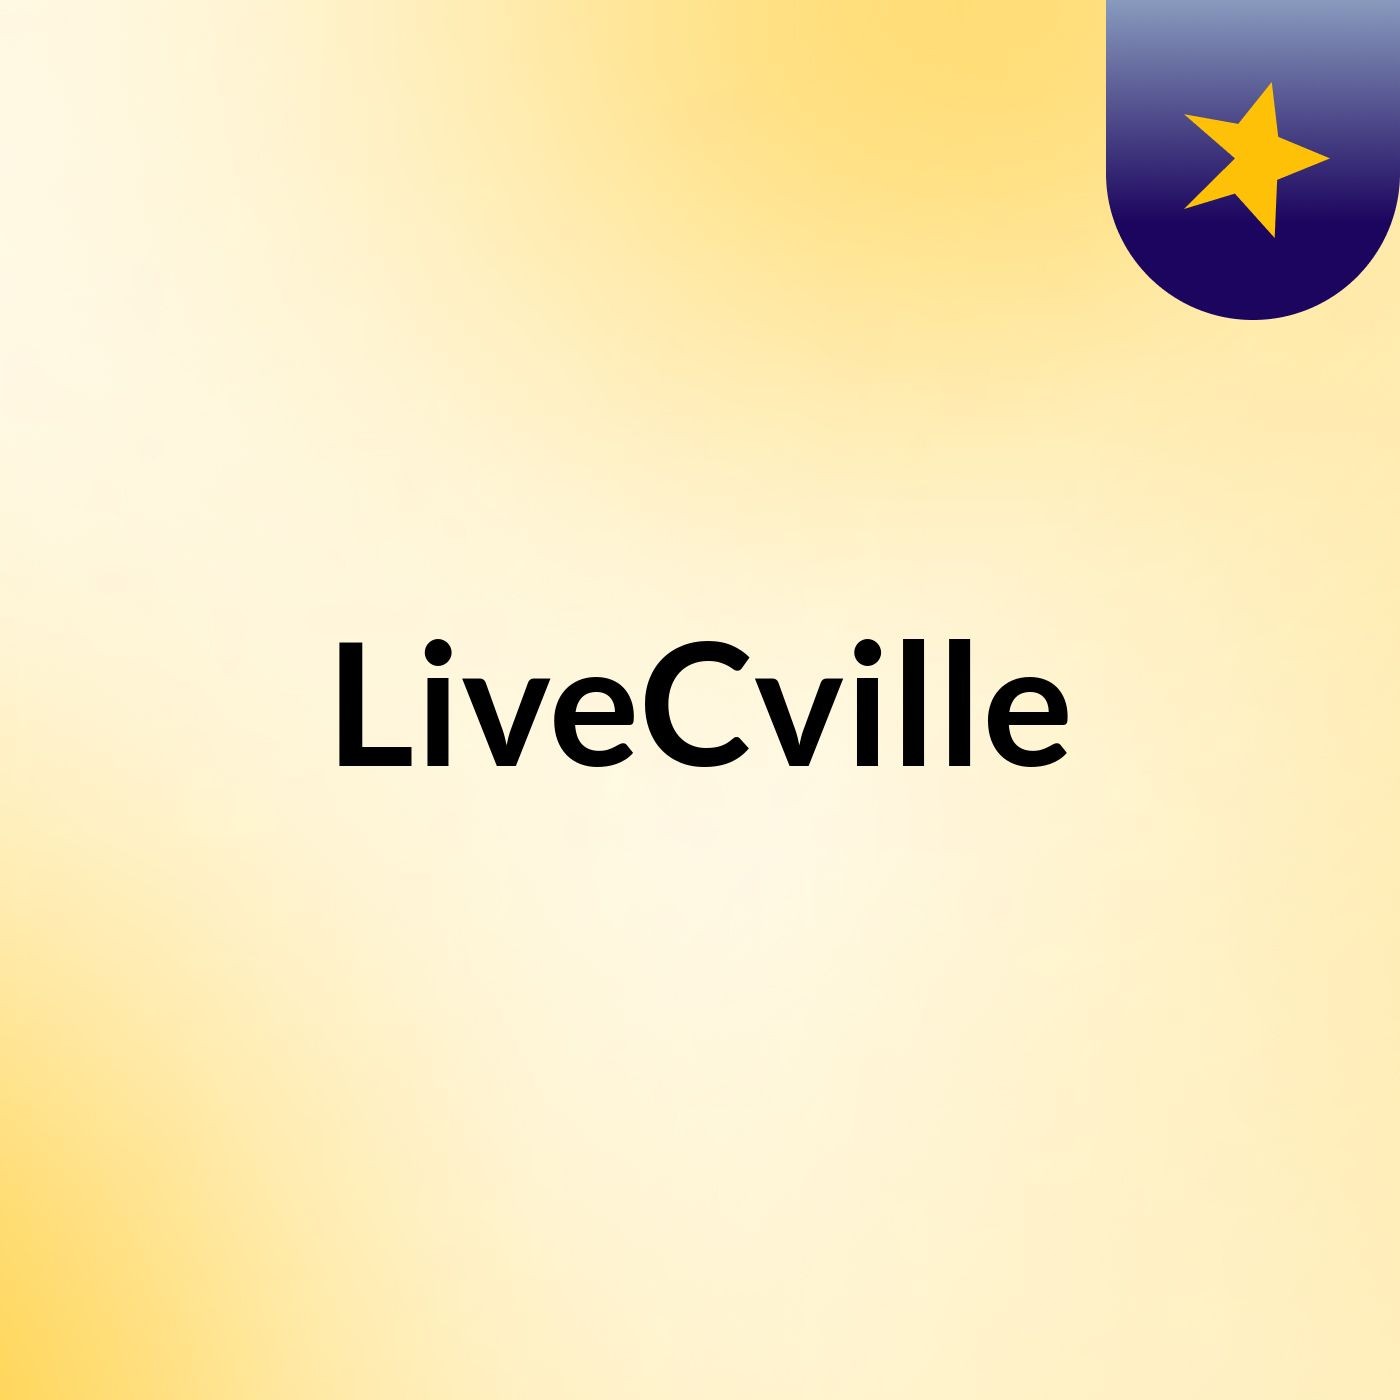 LiveCville